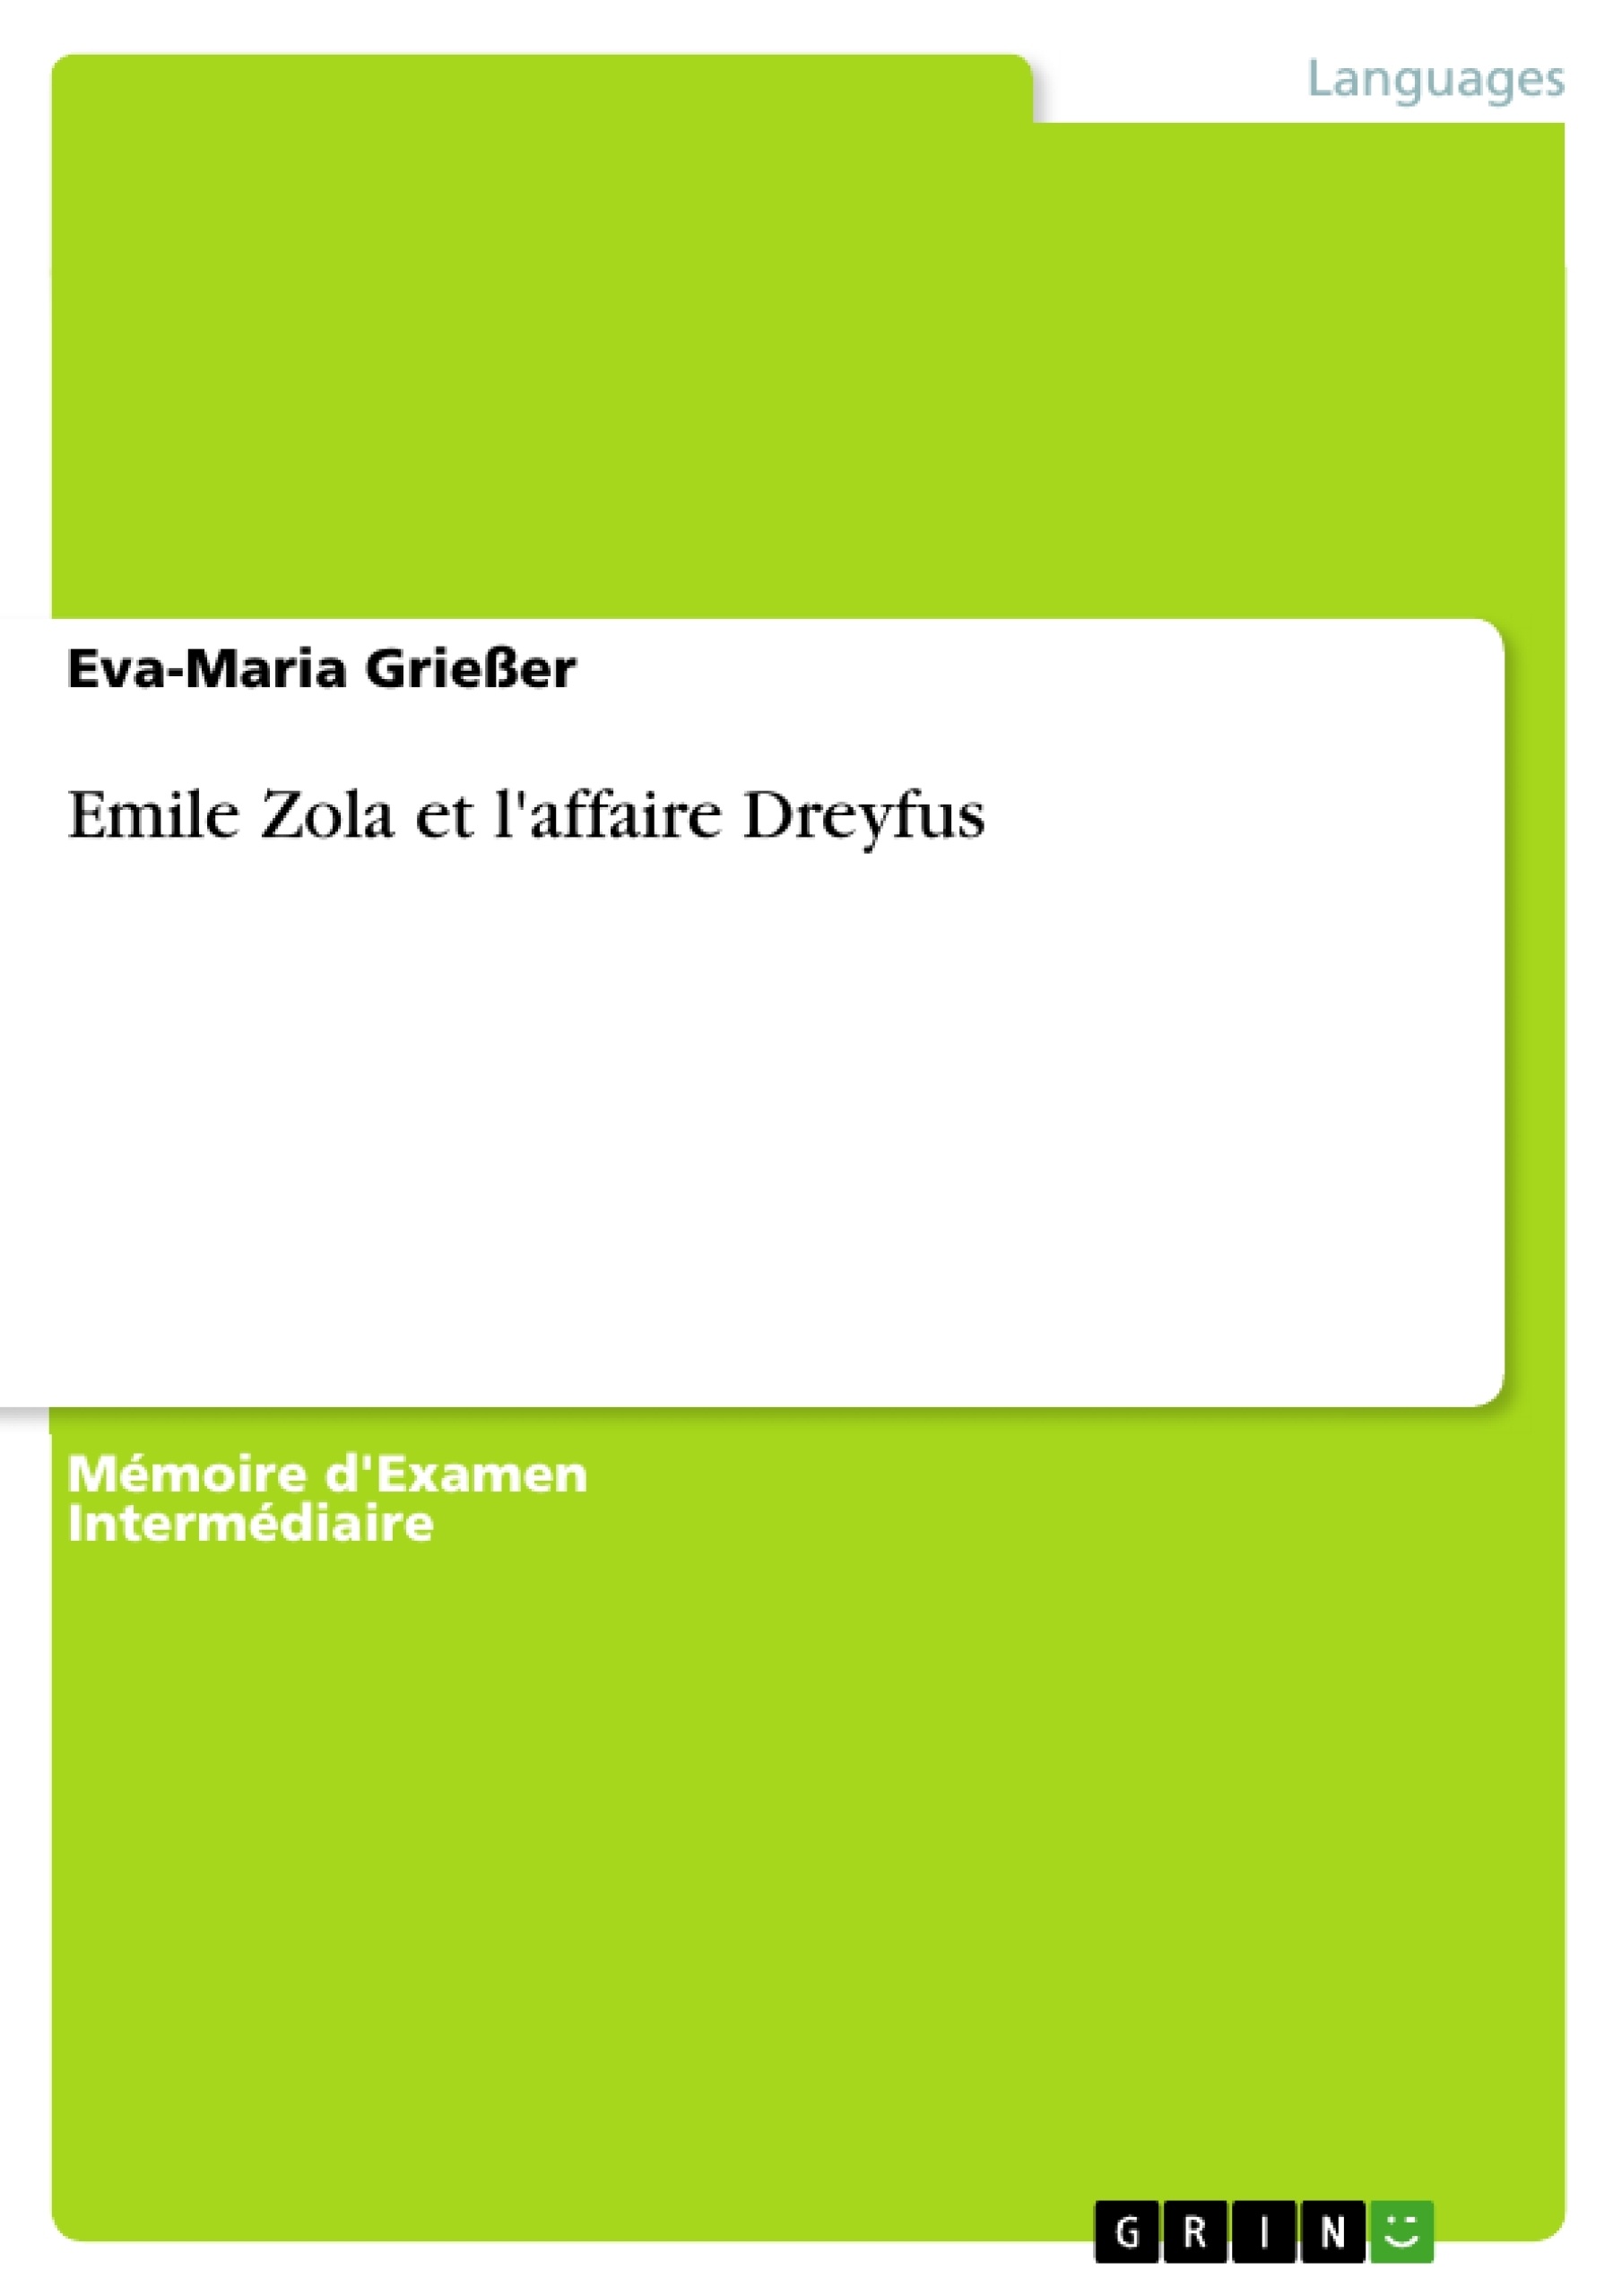 Título: Emile Zola et l'affaire Dreyfus